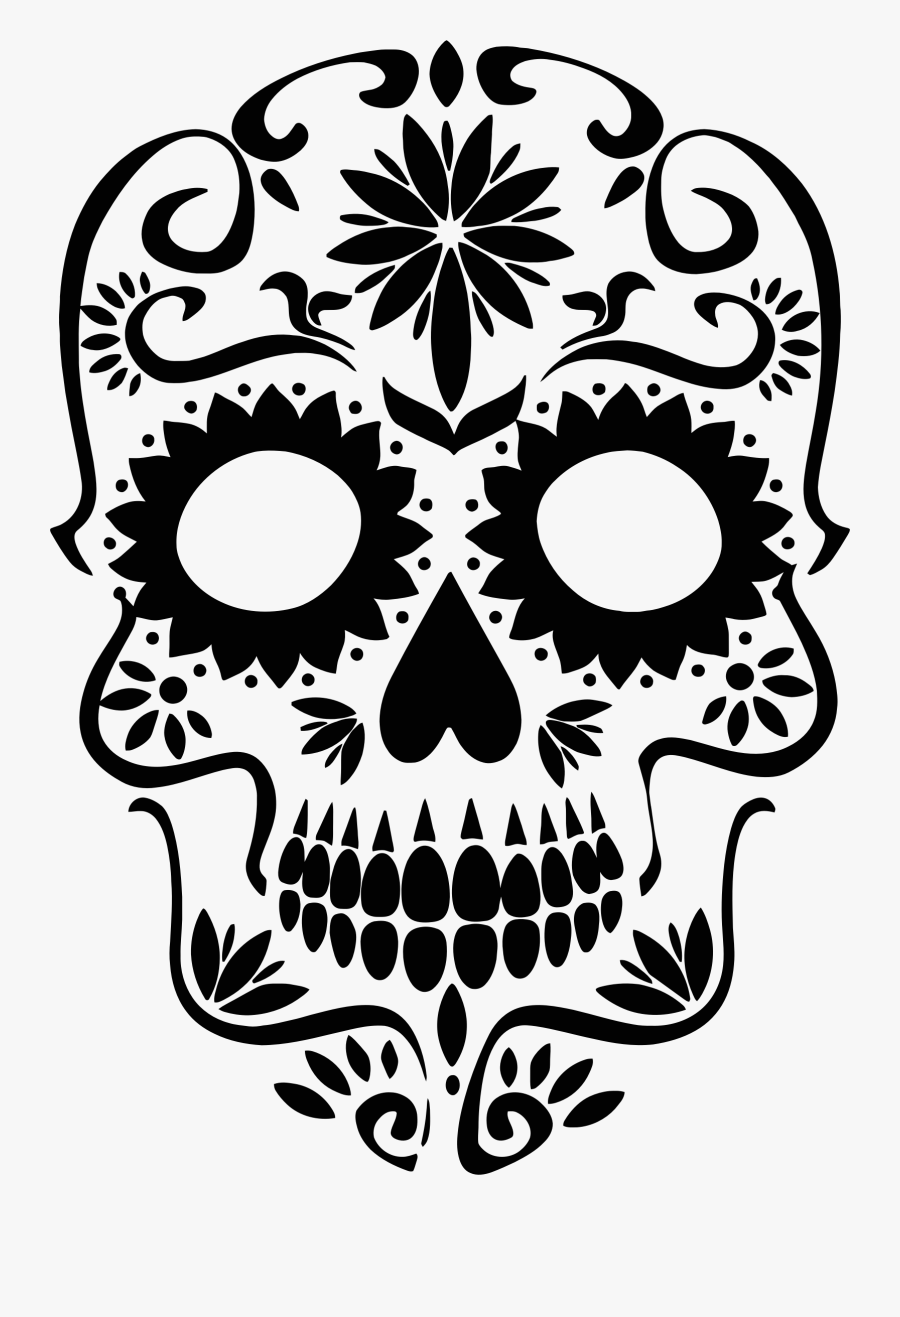 Skull Silhouette Clip Art Sugar Skull Silhouette - Sugar Skull Clipart Png, Transparent Clipart